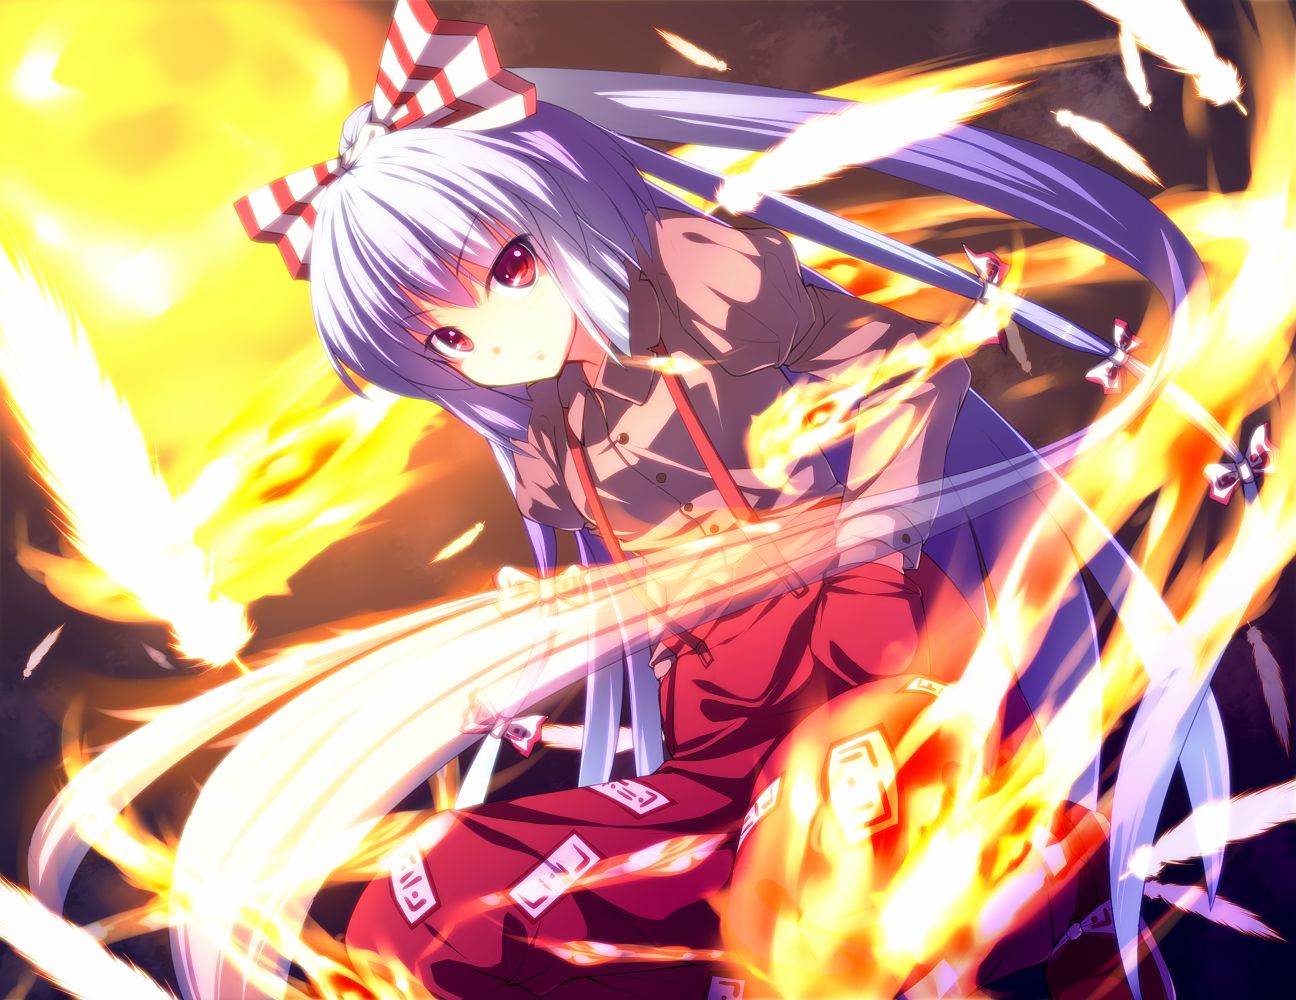 touhou, fujiwara no mokou, fire, anime, feather, flame, red, shrine maiden lock screen backgrounds